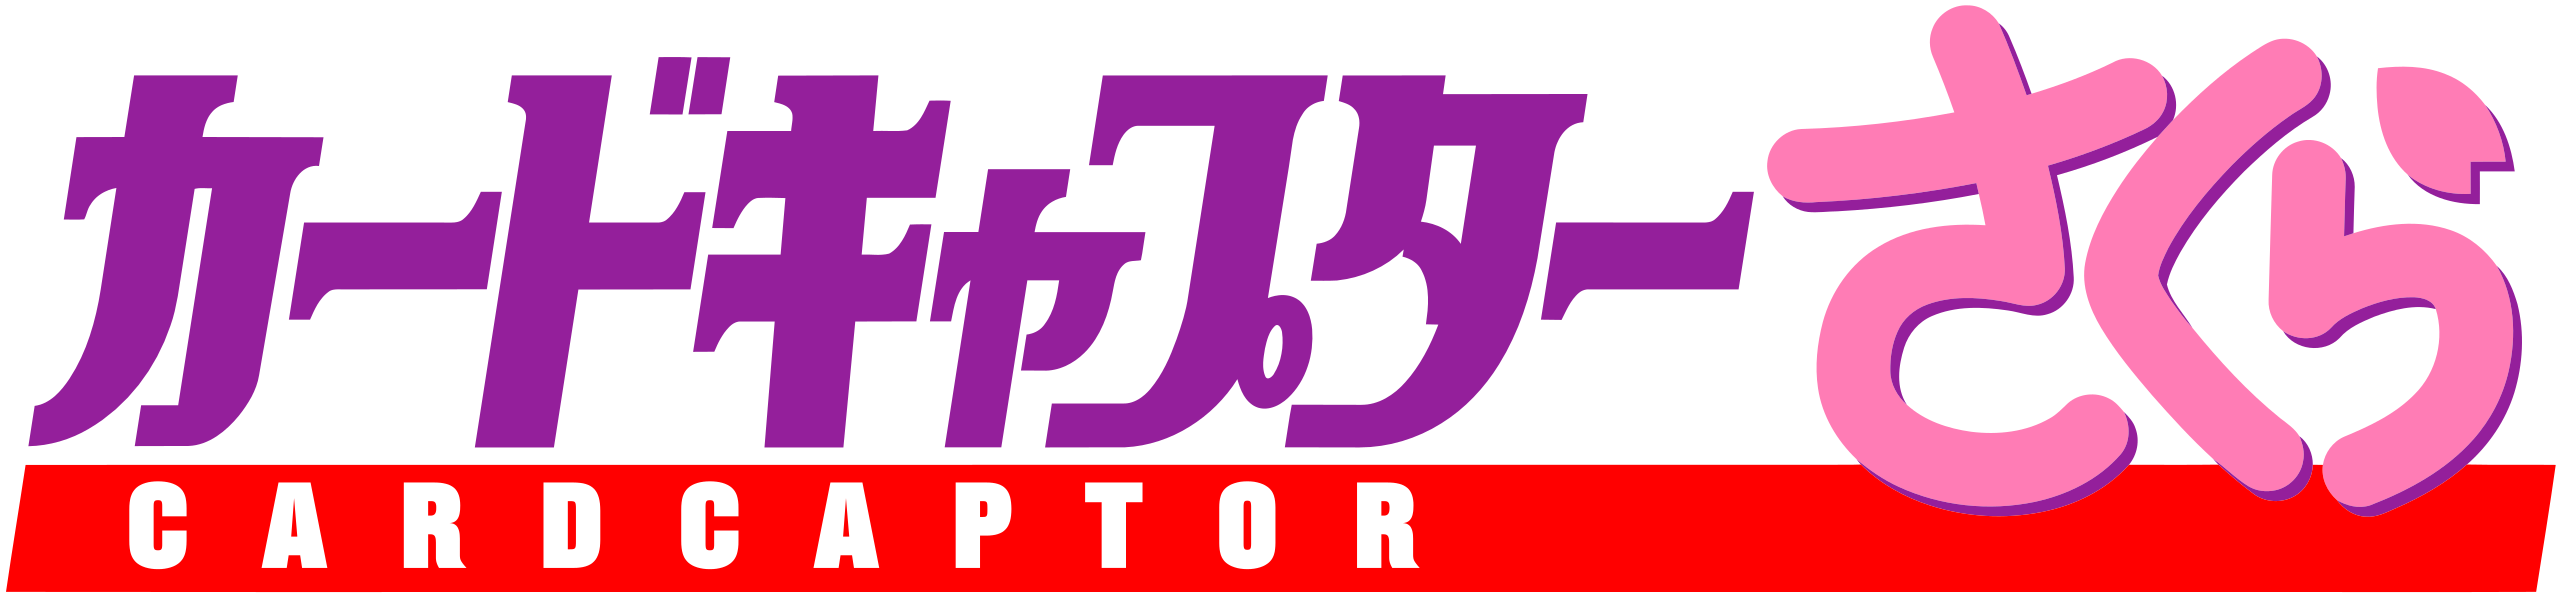 Cardcaptor Sakura Logo - KibrisPDR